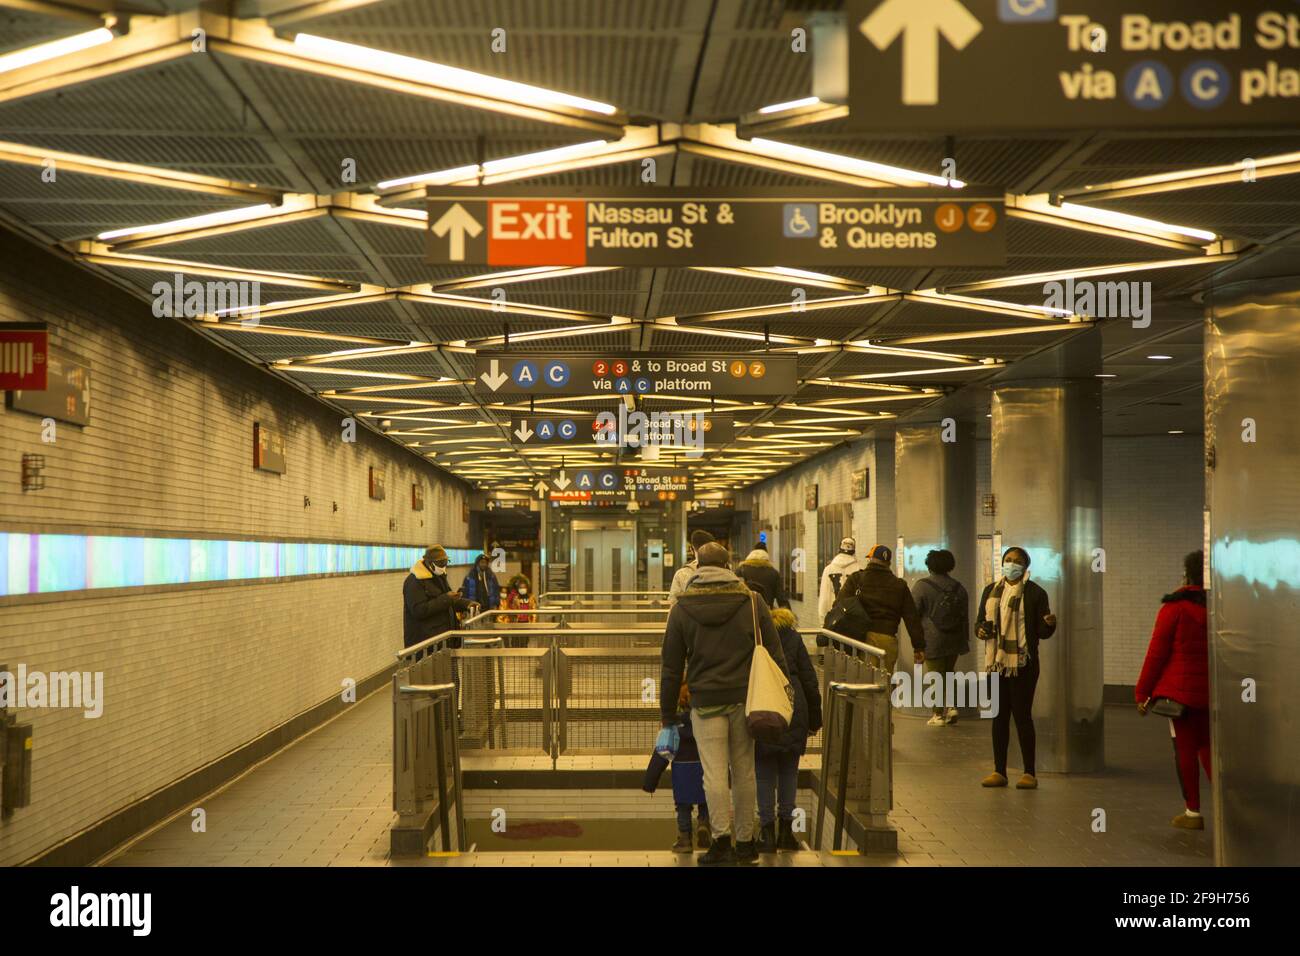 Im Inneren des Eingangs zum großen Fulton Street Transit Center am Fulton und Broadway, wo viele U-Bahnlinien in der Innenstadt von Manhattan verschmelzen. Stockfoto